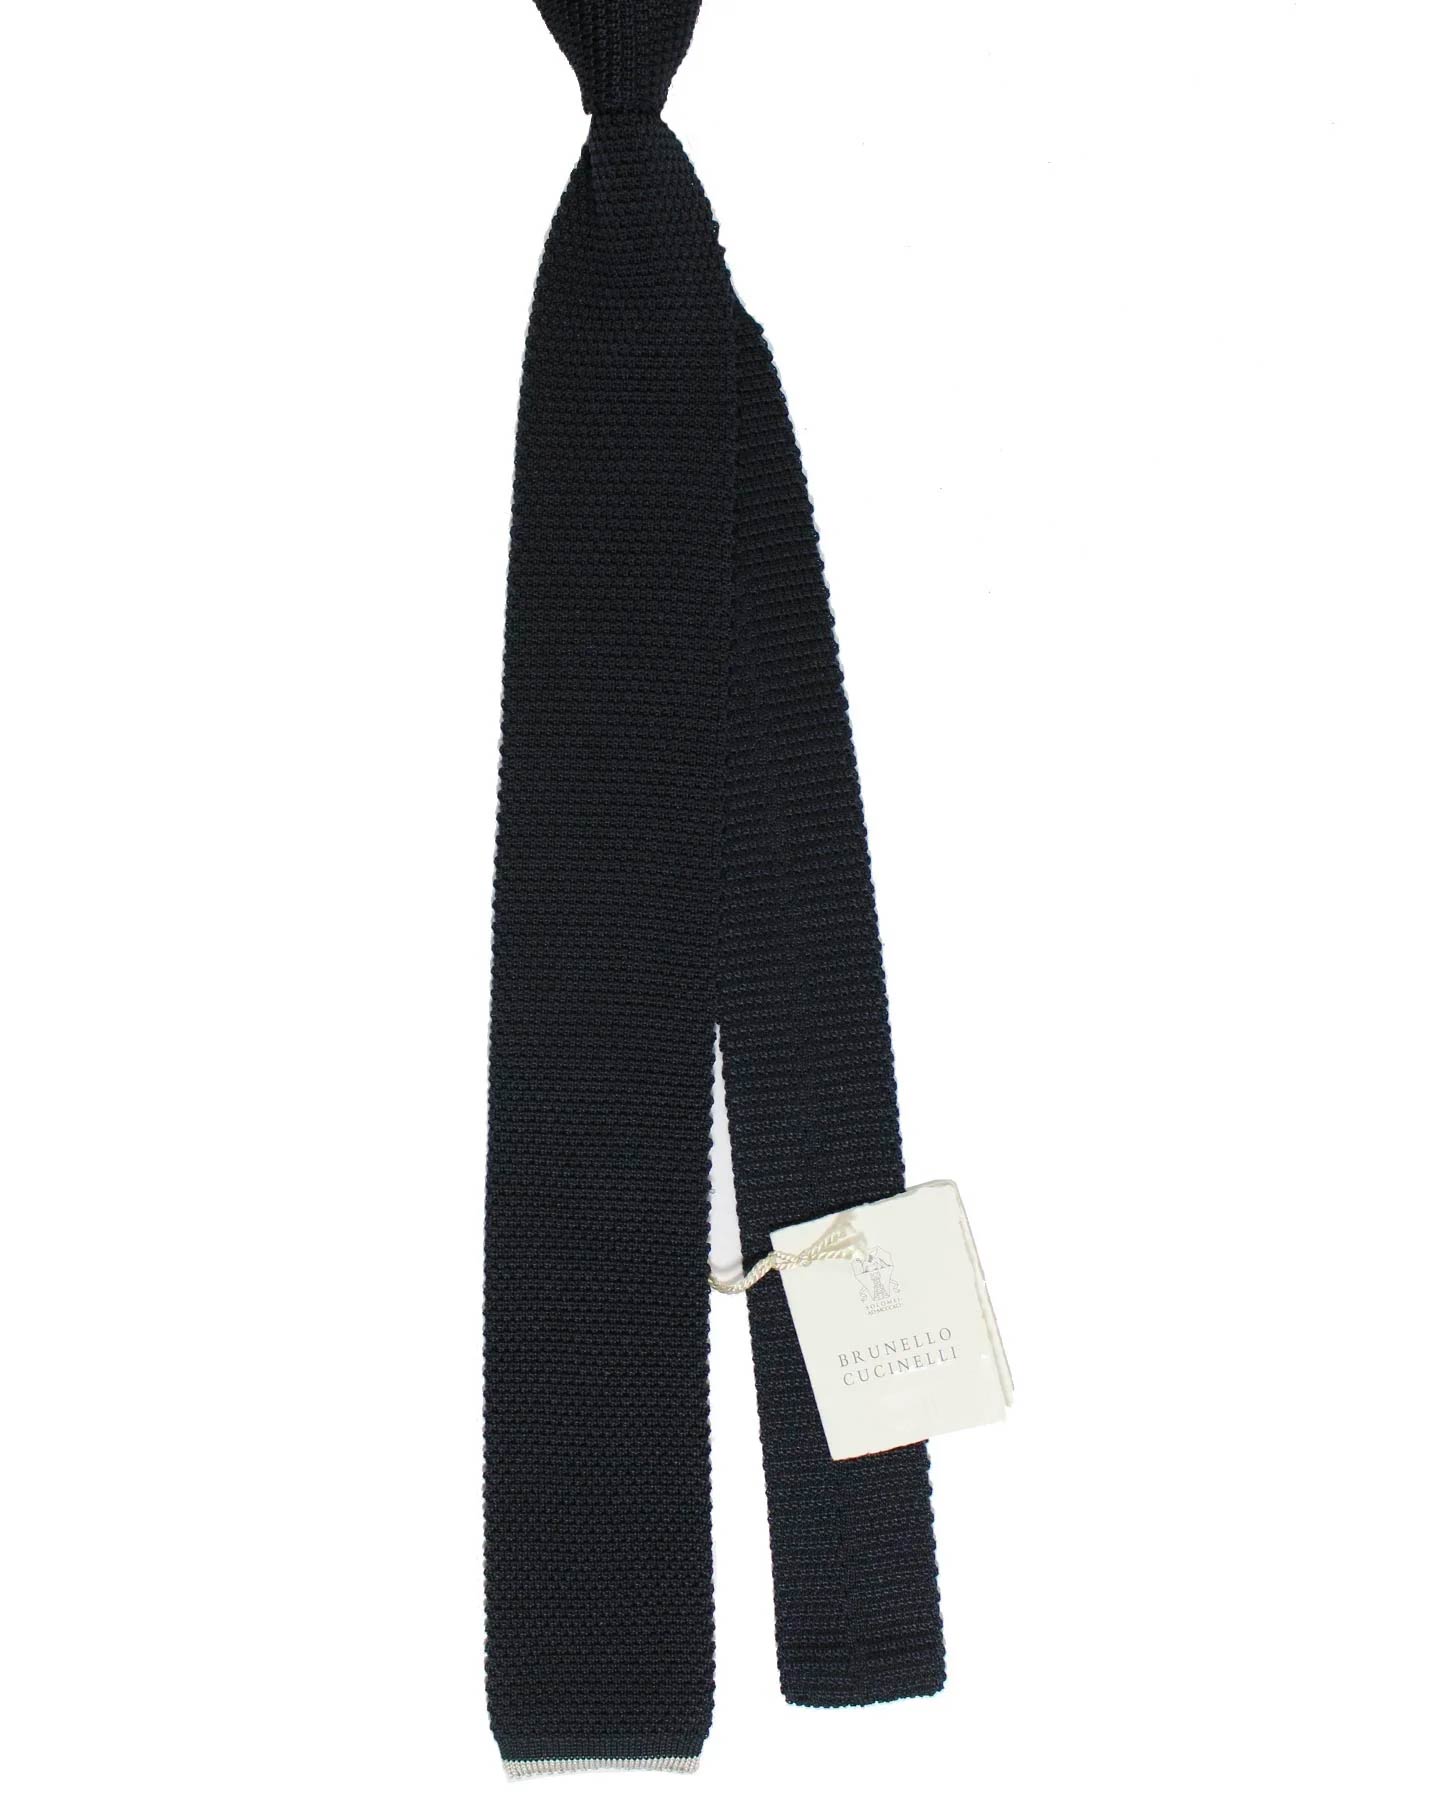  Dark Navy Knitted Tie Cucinelli